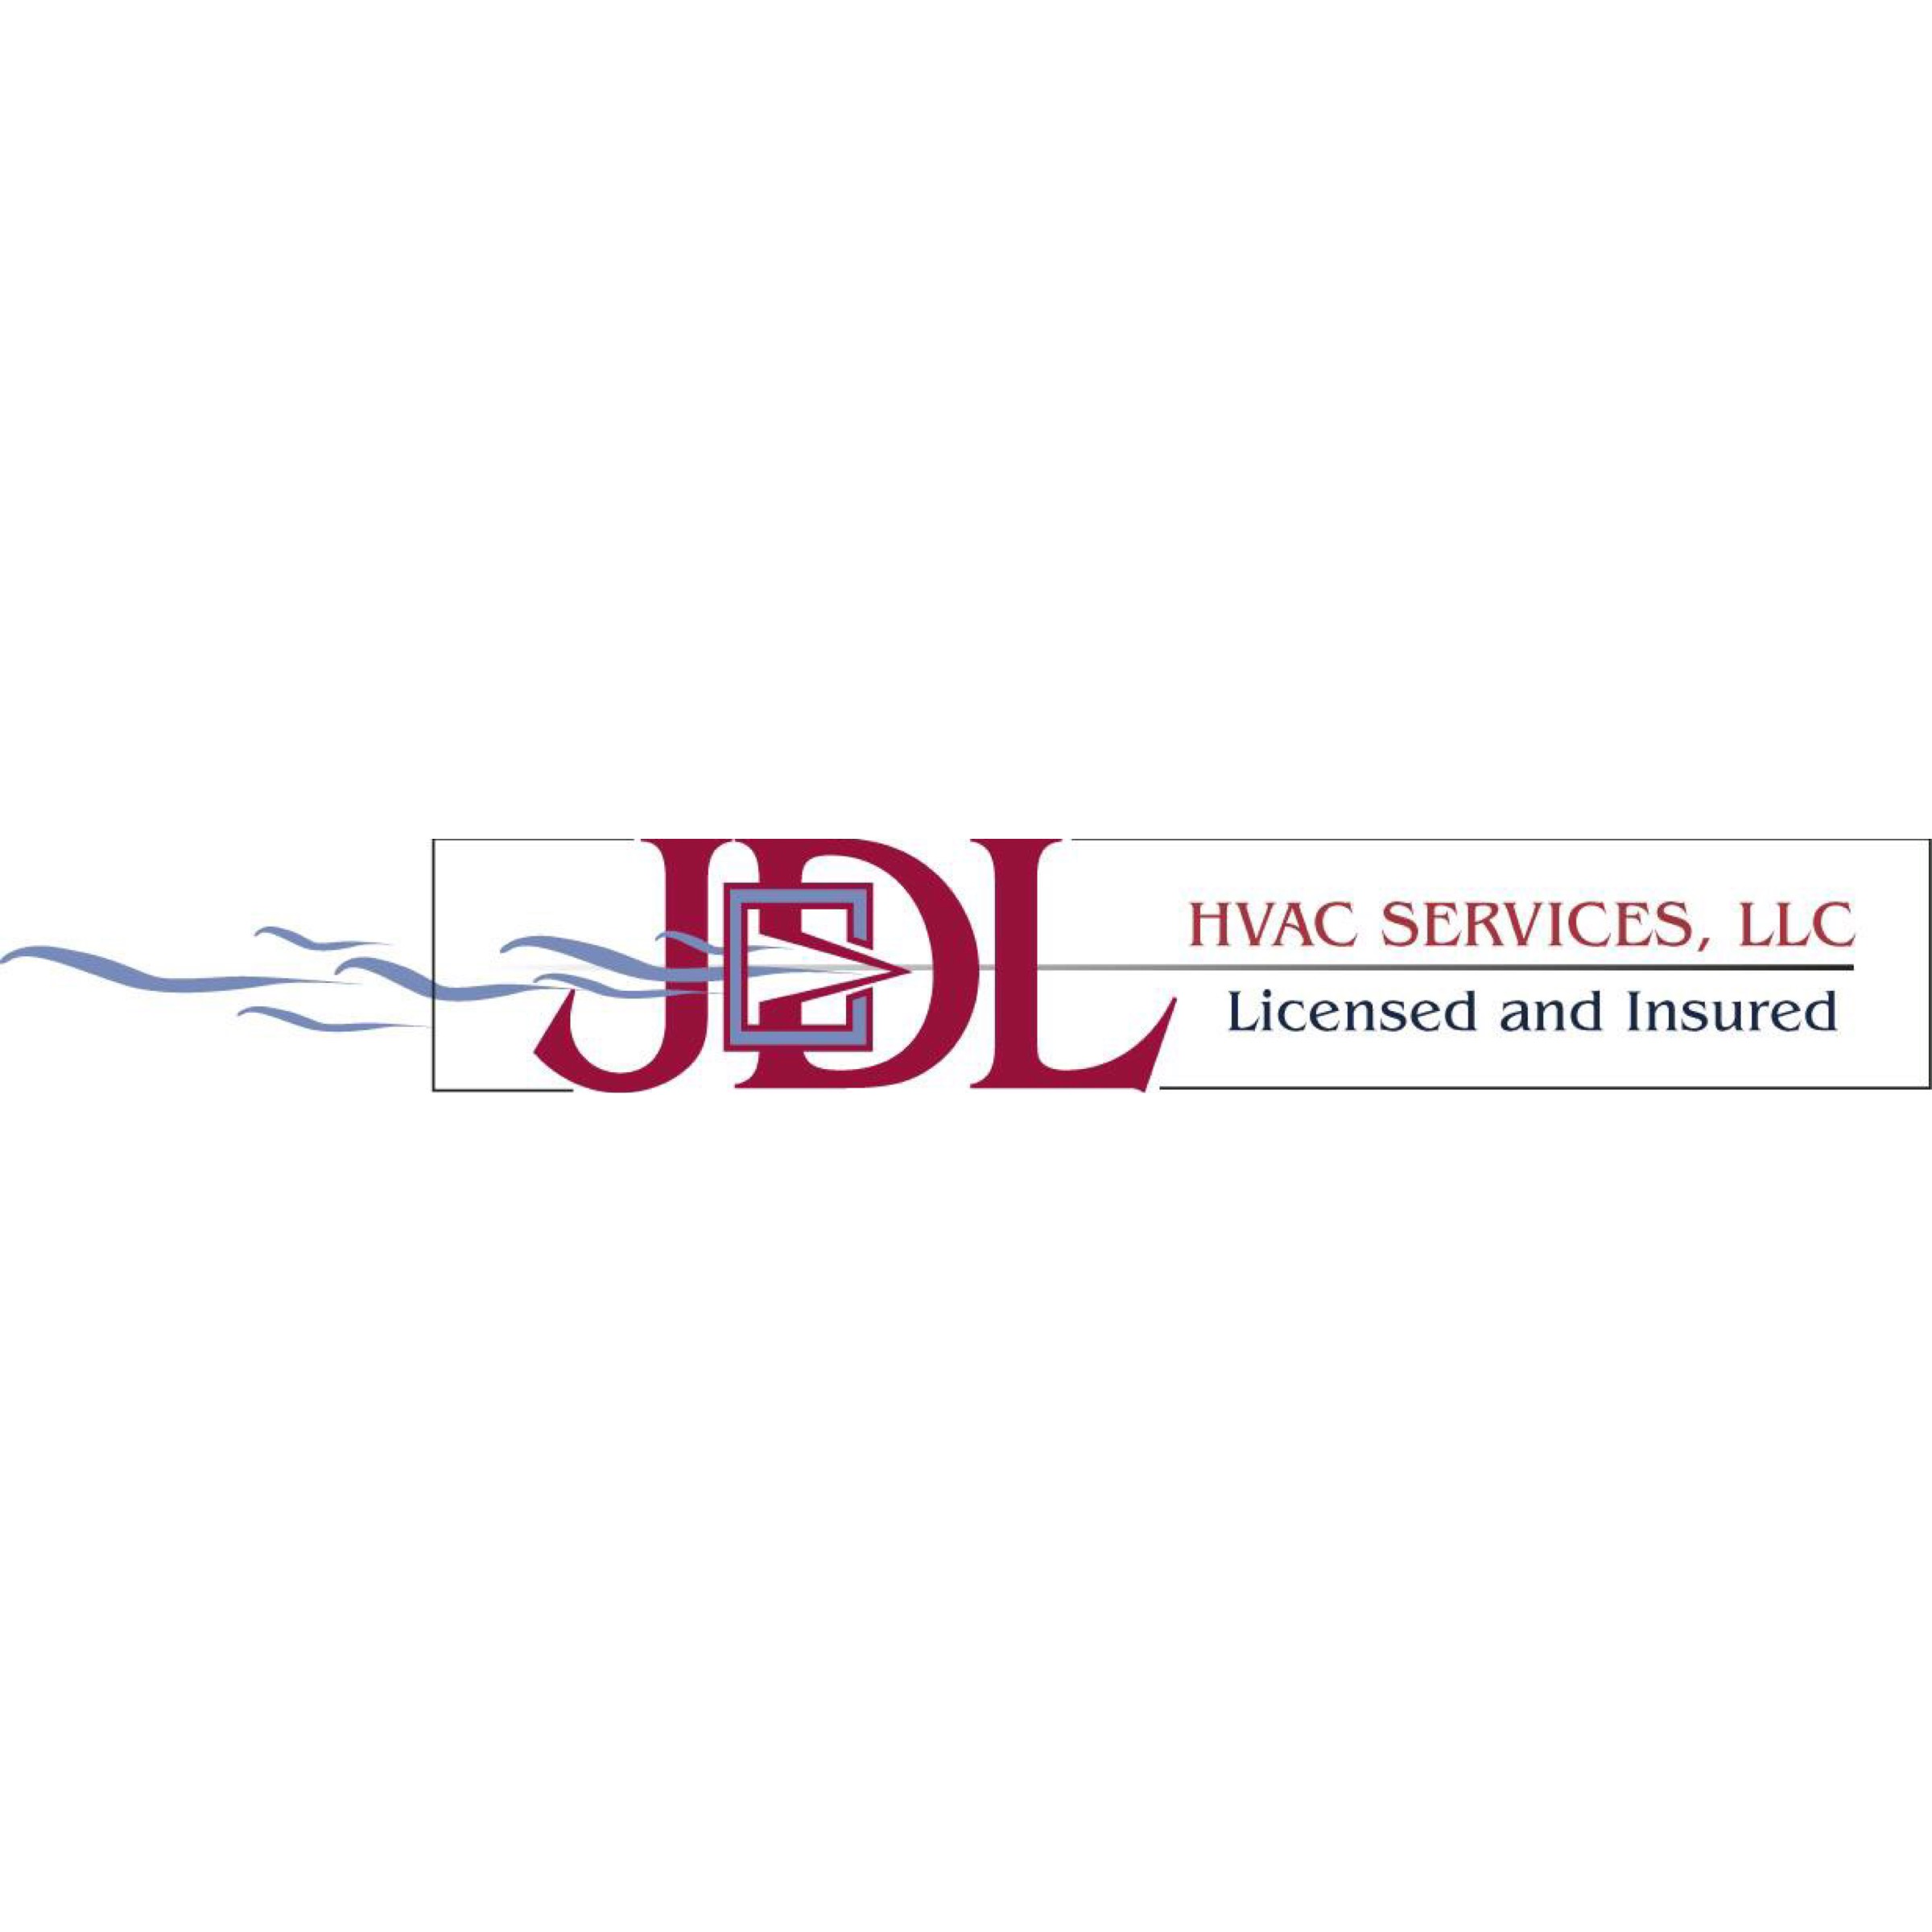 JDL HVAC & Plumbing Services Logo